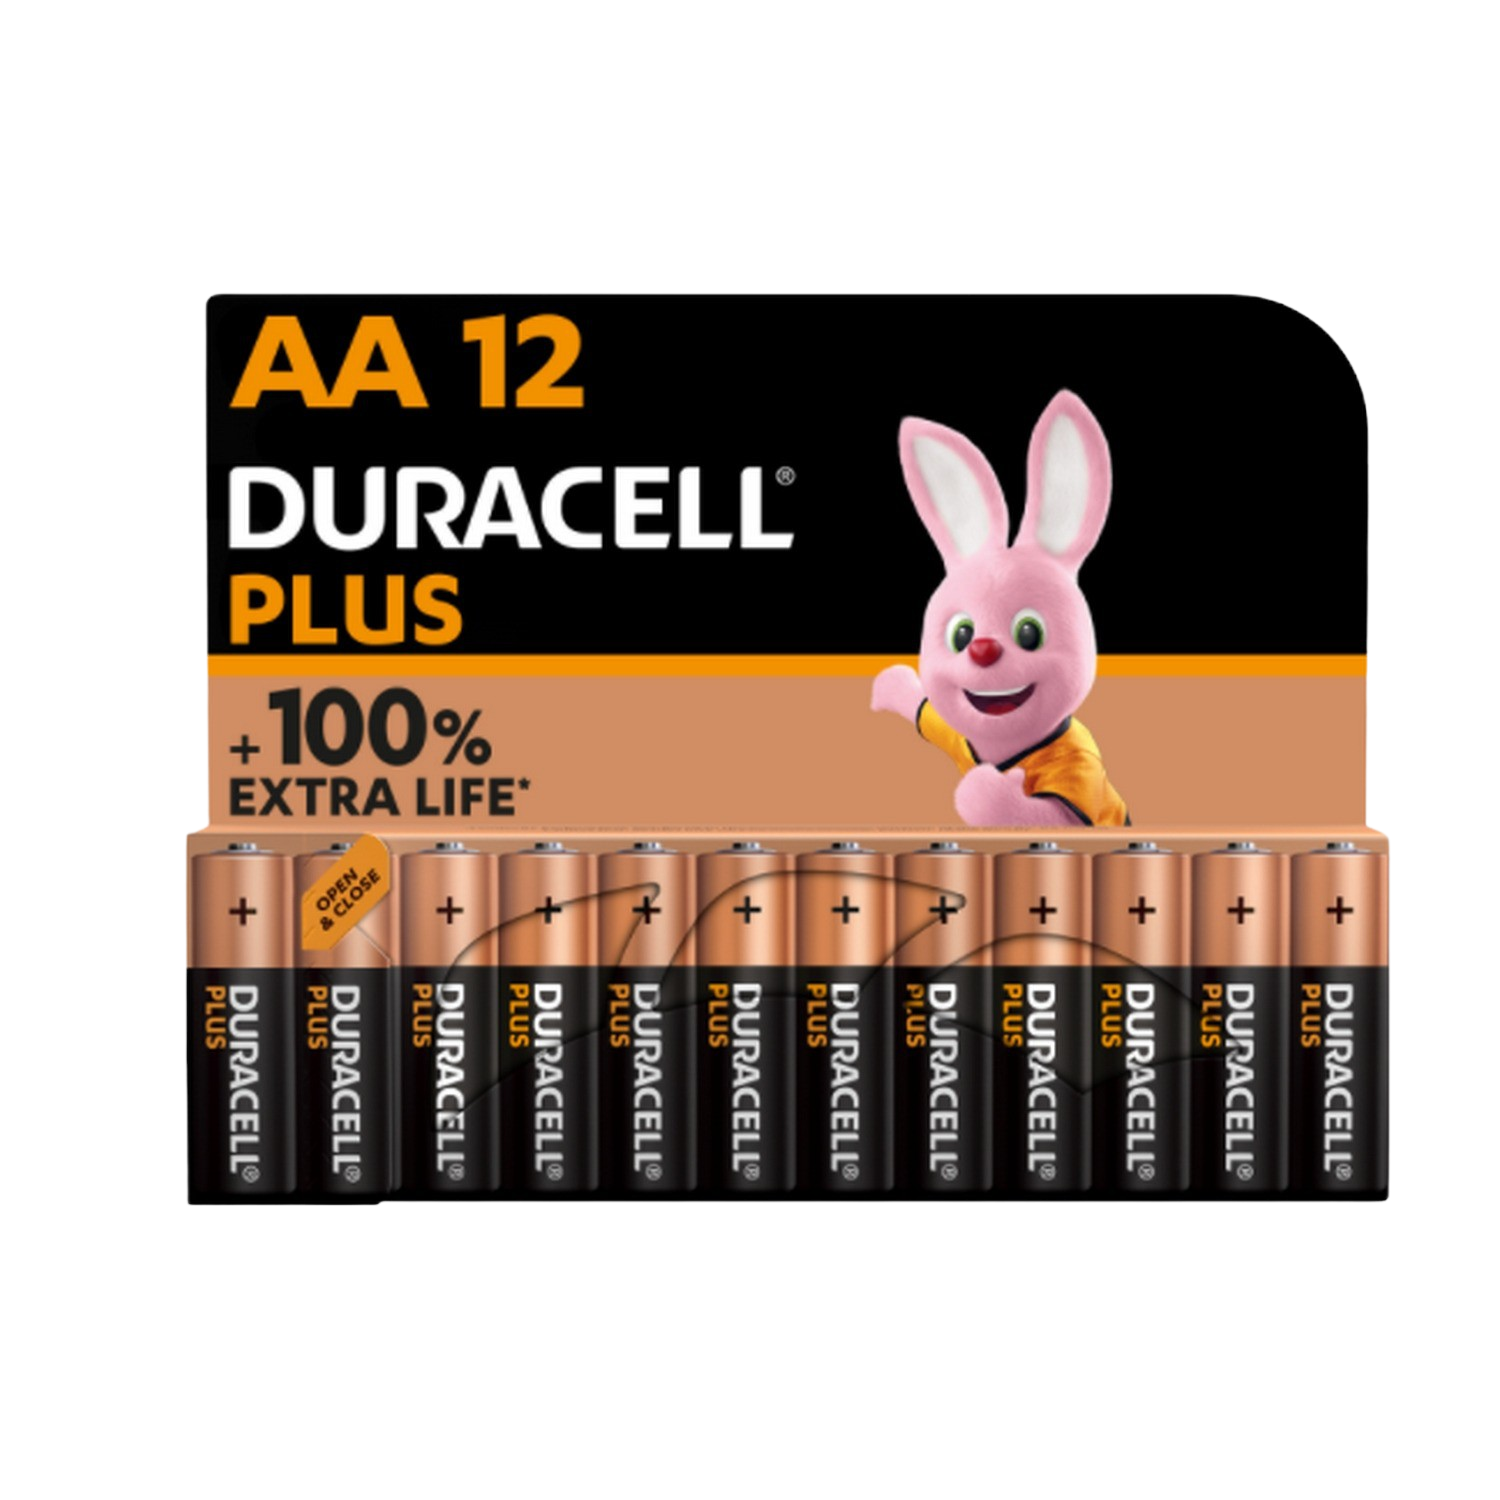 Duracell Pilas Alcalinas plus aa 1.5 voltios lr6 mn1500 paquete de 12 mx1500 lr06